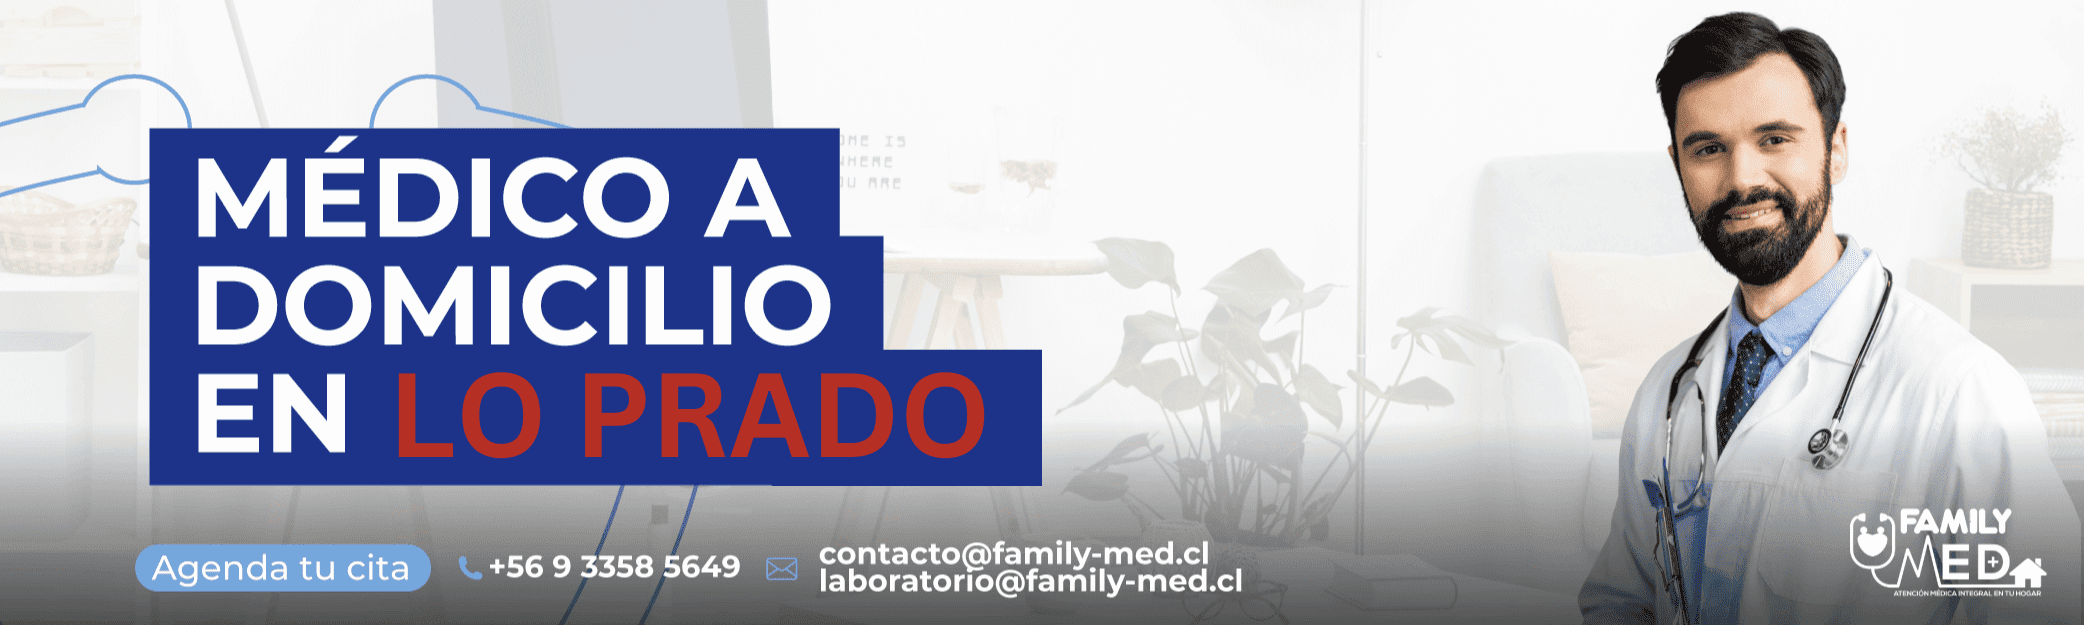 Banner de servicio medico a domicilio en la comuna de Lo Prado